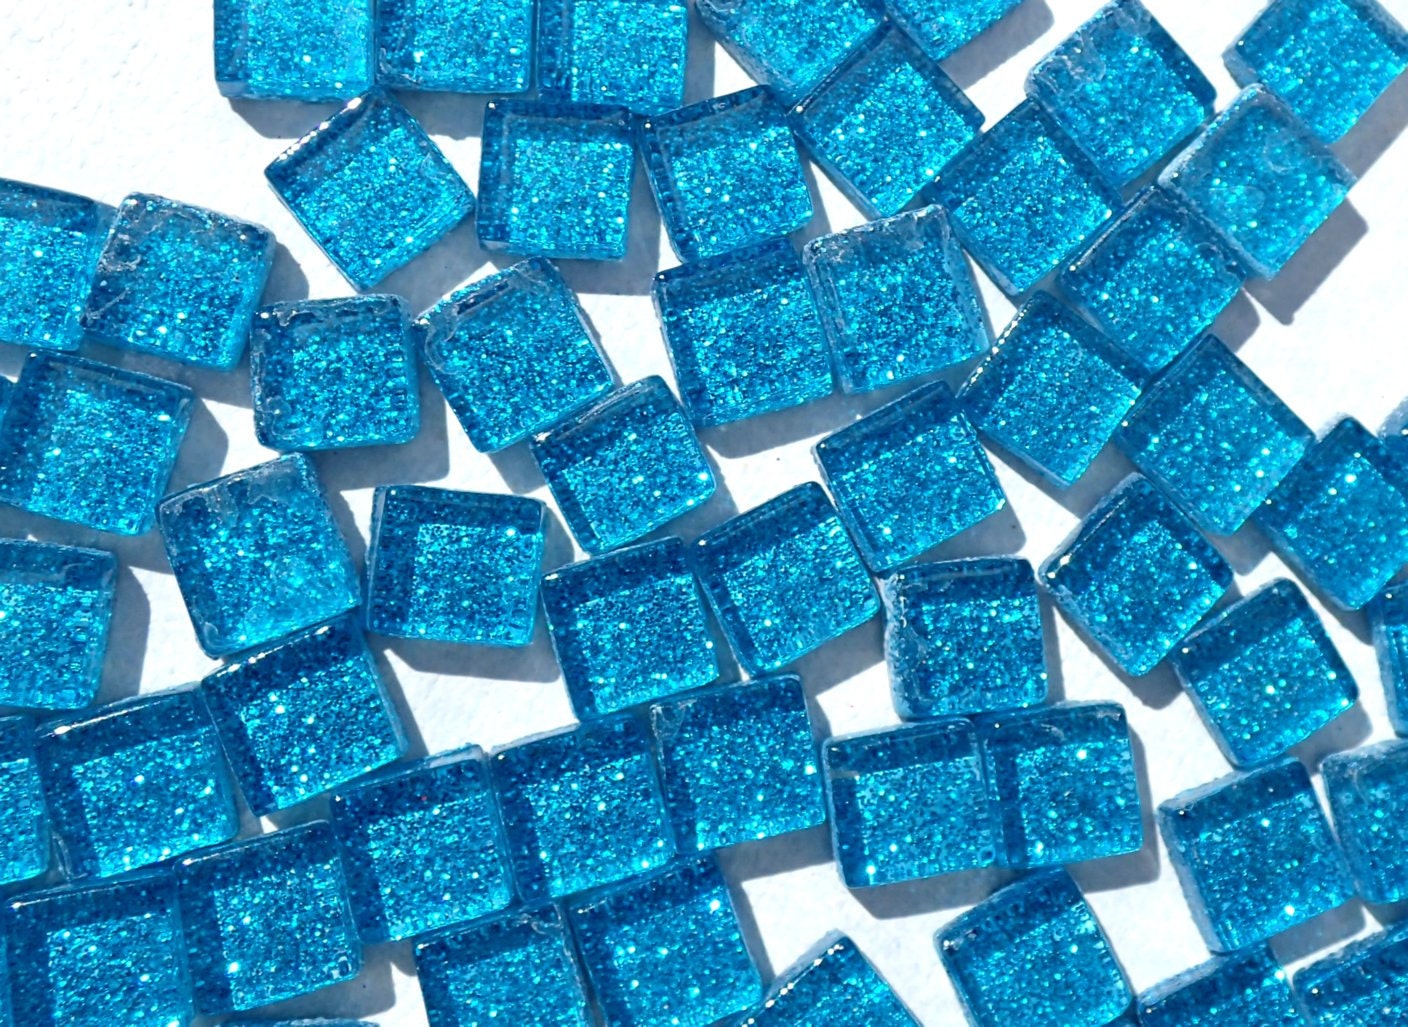 Sky Blue Glitter Tiles - 1 cm - 100g - Over 100 Metallic Small Glass Tiles